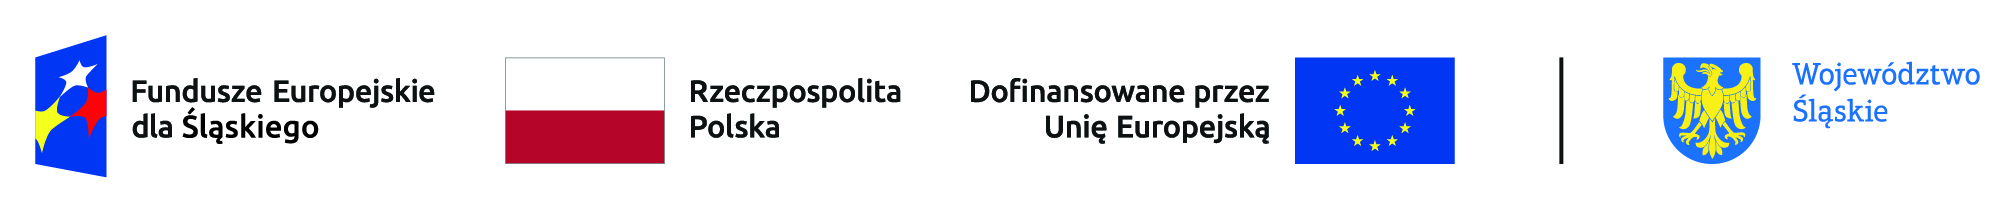 Obrazek składa się z czterech znaków graficznych, położnych poziomo, obok siebie. Pierwszy od lewej strony jest: znak Funduszy Europejskich - to logo złożone z symbolu graficznego (granatowy trapez z trzema gwiazdami: białą, żółtą i czerwoną) oraz napisu Fundusze Europejskie dla Śląskiego, kolejny znak barw Rzeczypospolitej Polskiej –  składa się z barw Rzeczypospolitej Polskiej oraz nazwy „Rzeczpospolita Polska”, kolejny znak Unii Europejskiej - to logo złożone z flagi Unii Europejskiej przedstawiającej 12 złotych gwiazd na błękitnym tle oraz napisu Dofinansowane przez Unię Europejską , kolejny znak graficzny województwa Śląskiego – składa się z symbolu  graficznego (złoty orzeł w błękitnym polu) oraz napisu Województwo Śląskie.